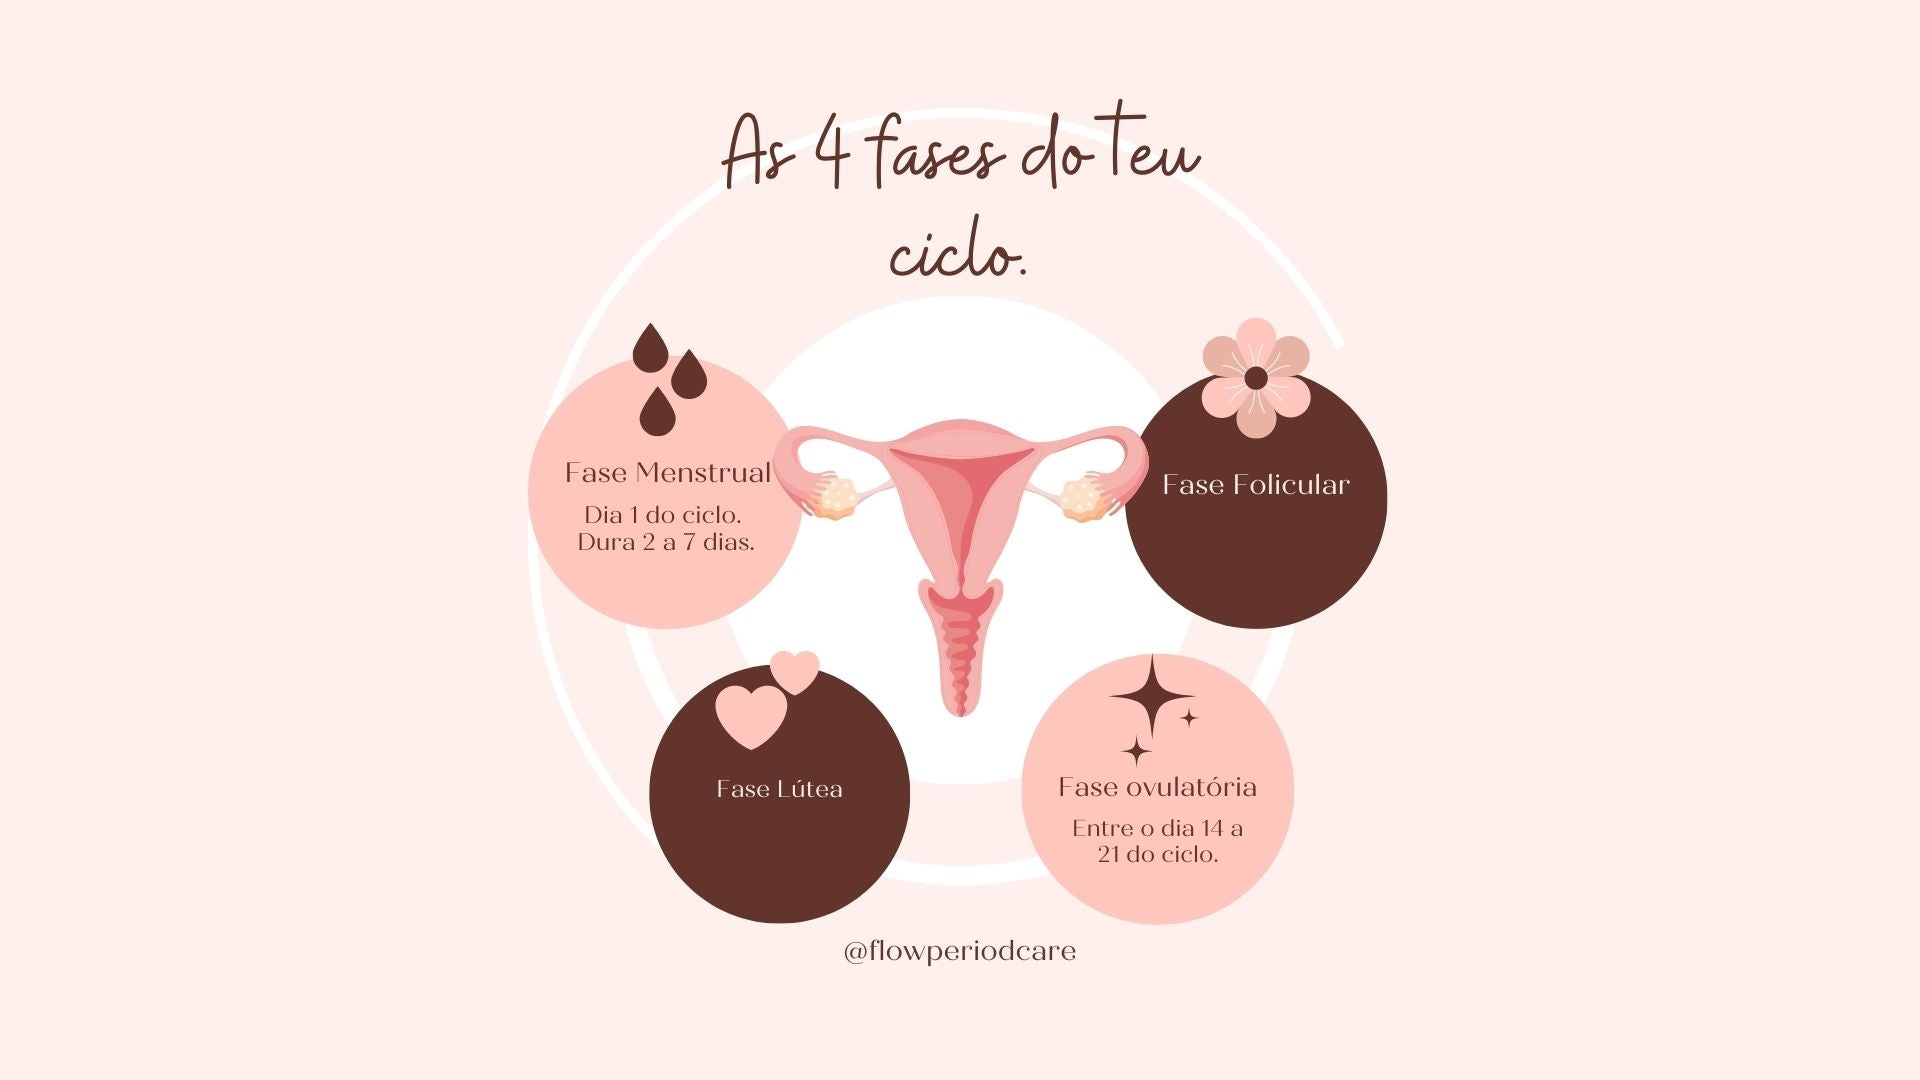 fase menstruacao